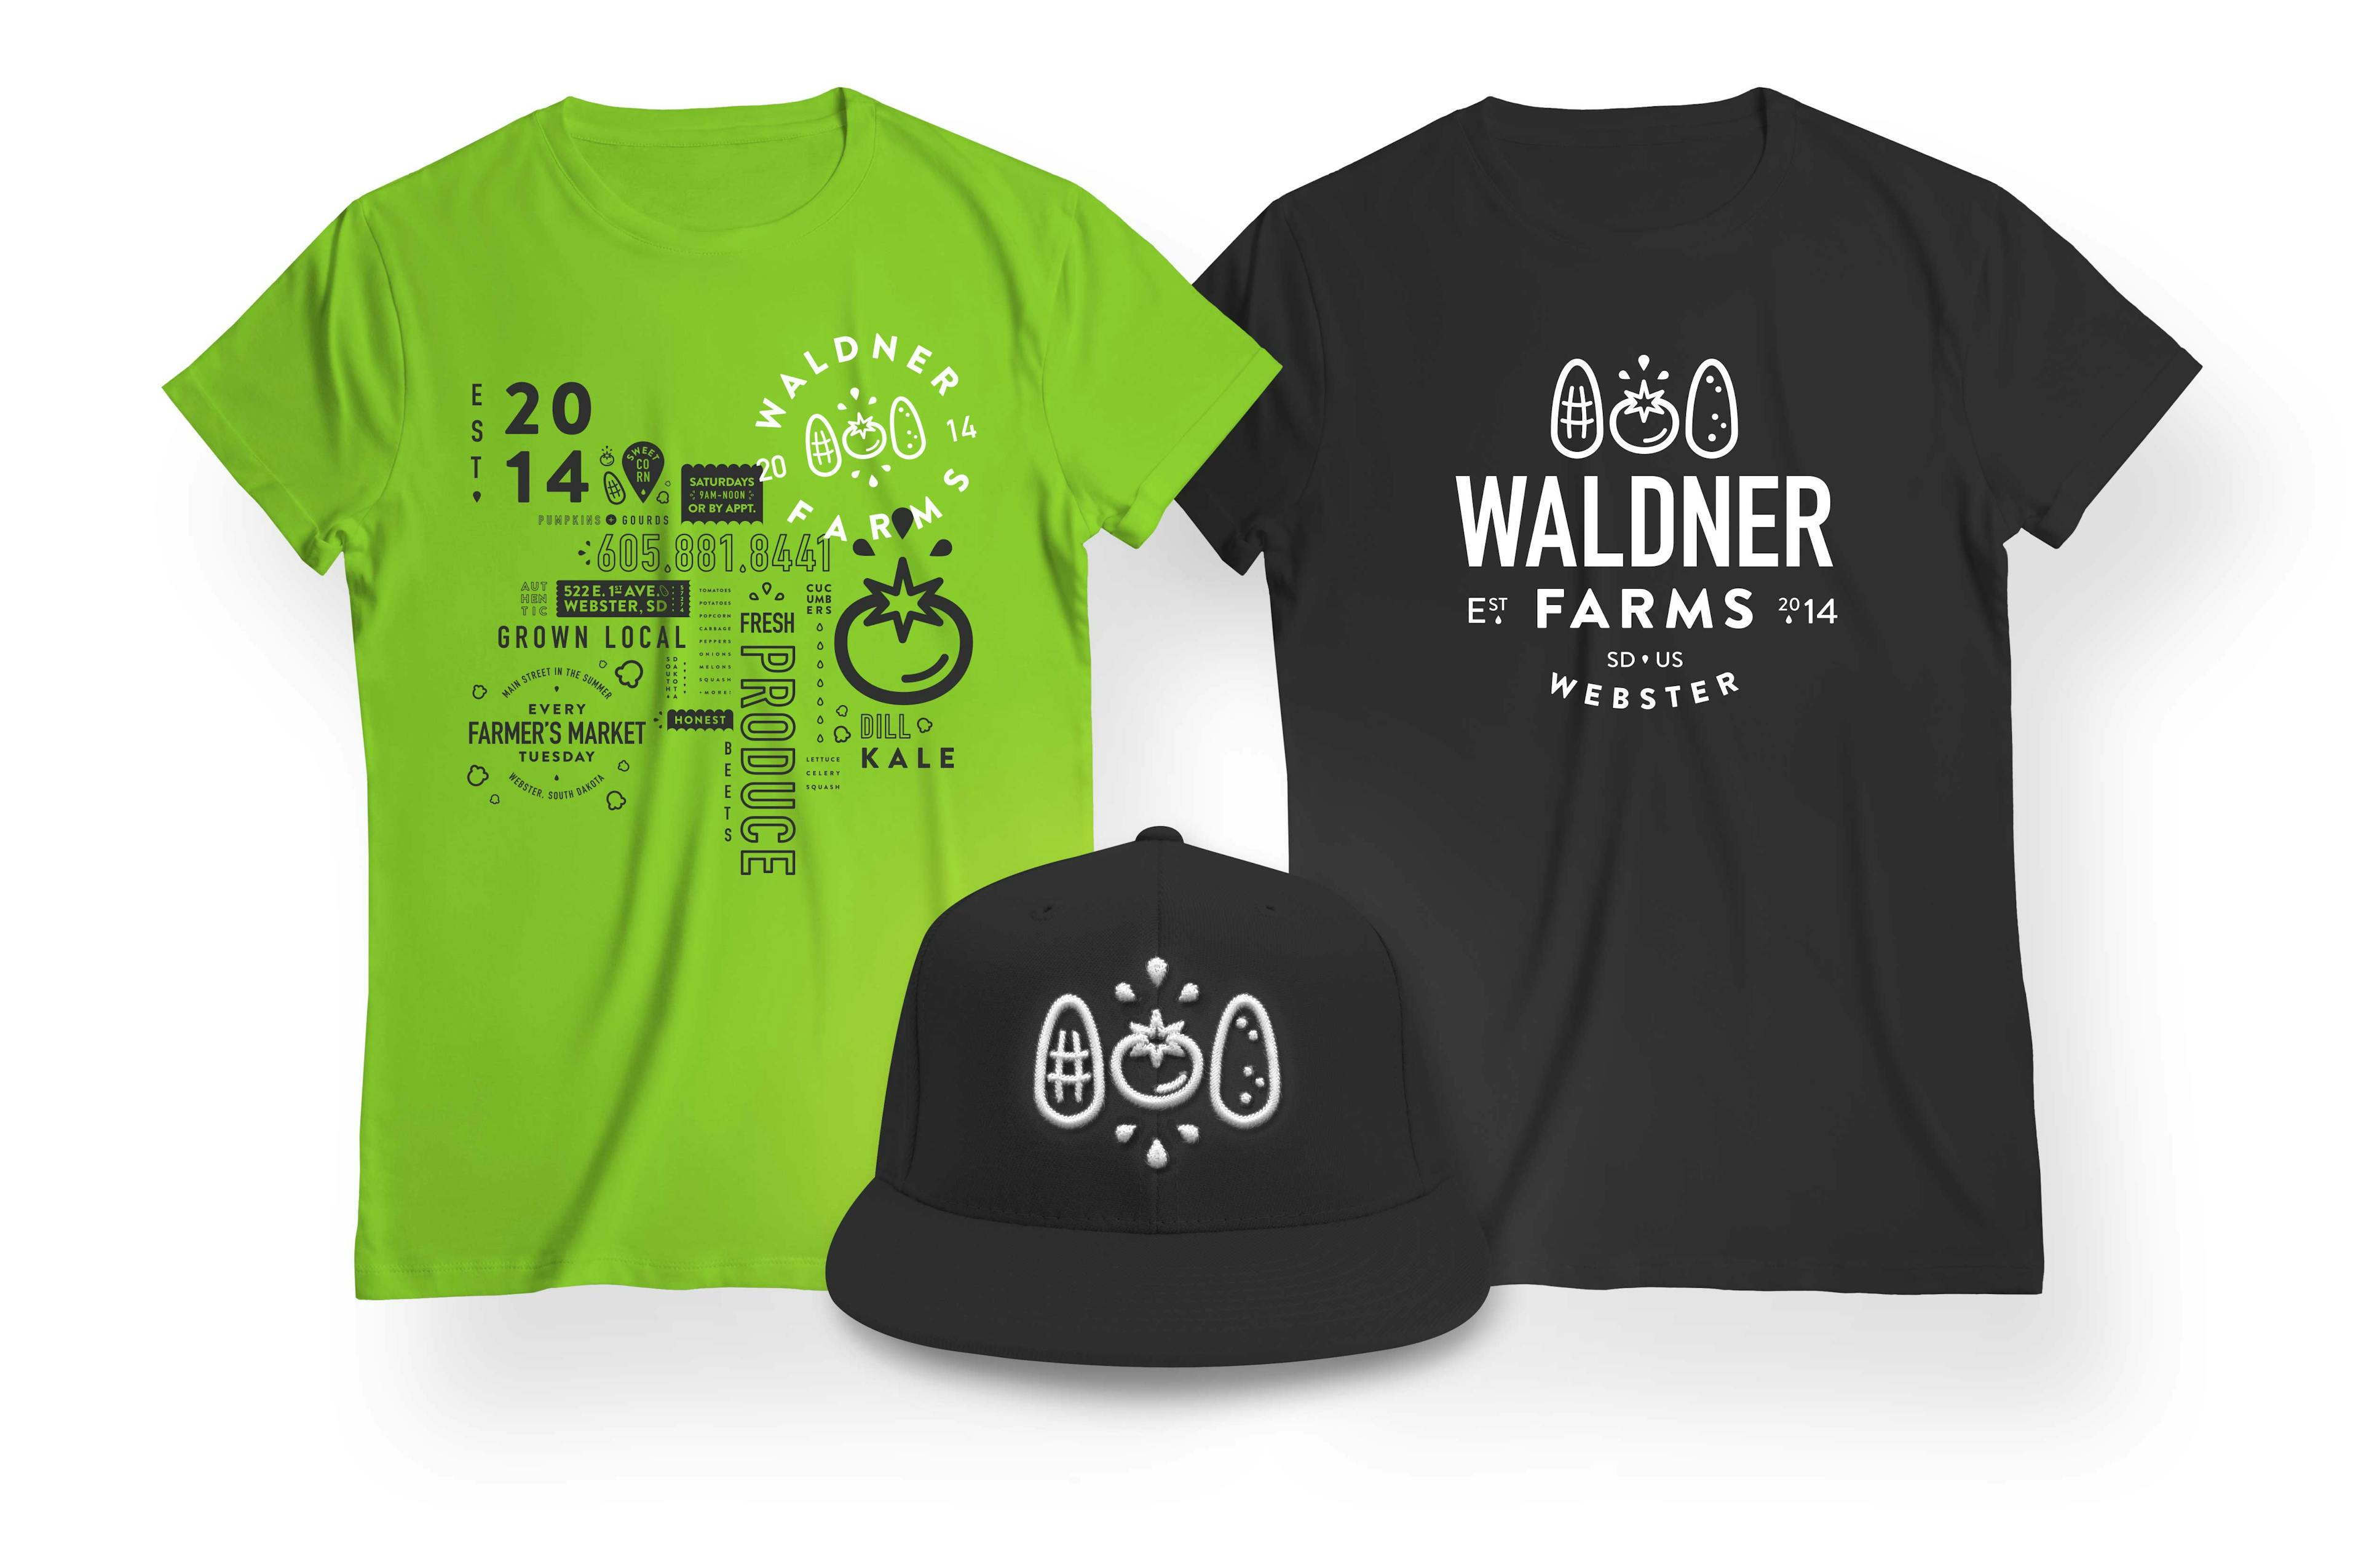 Waldner farms apparel